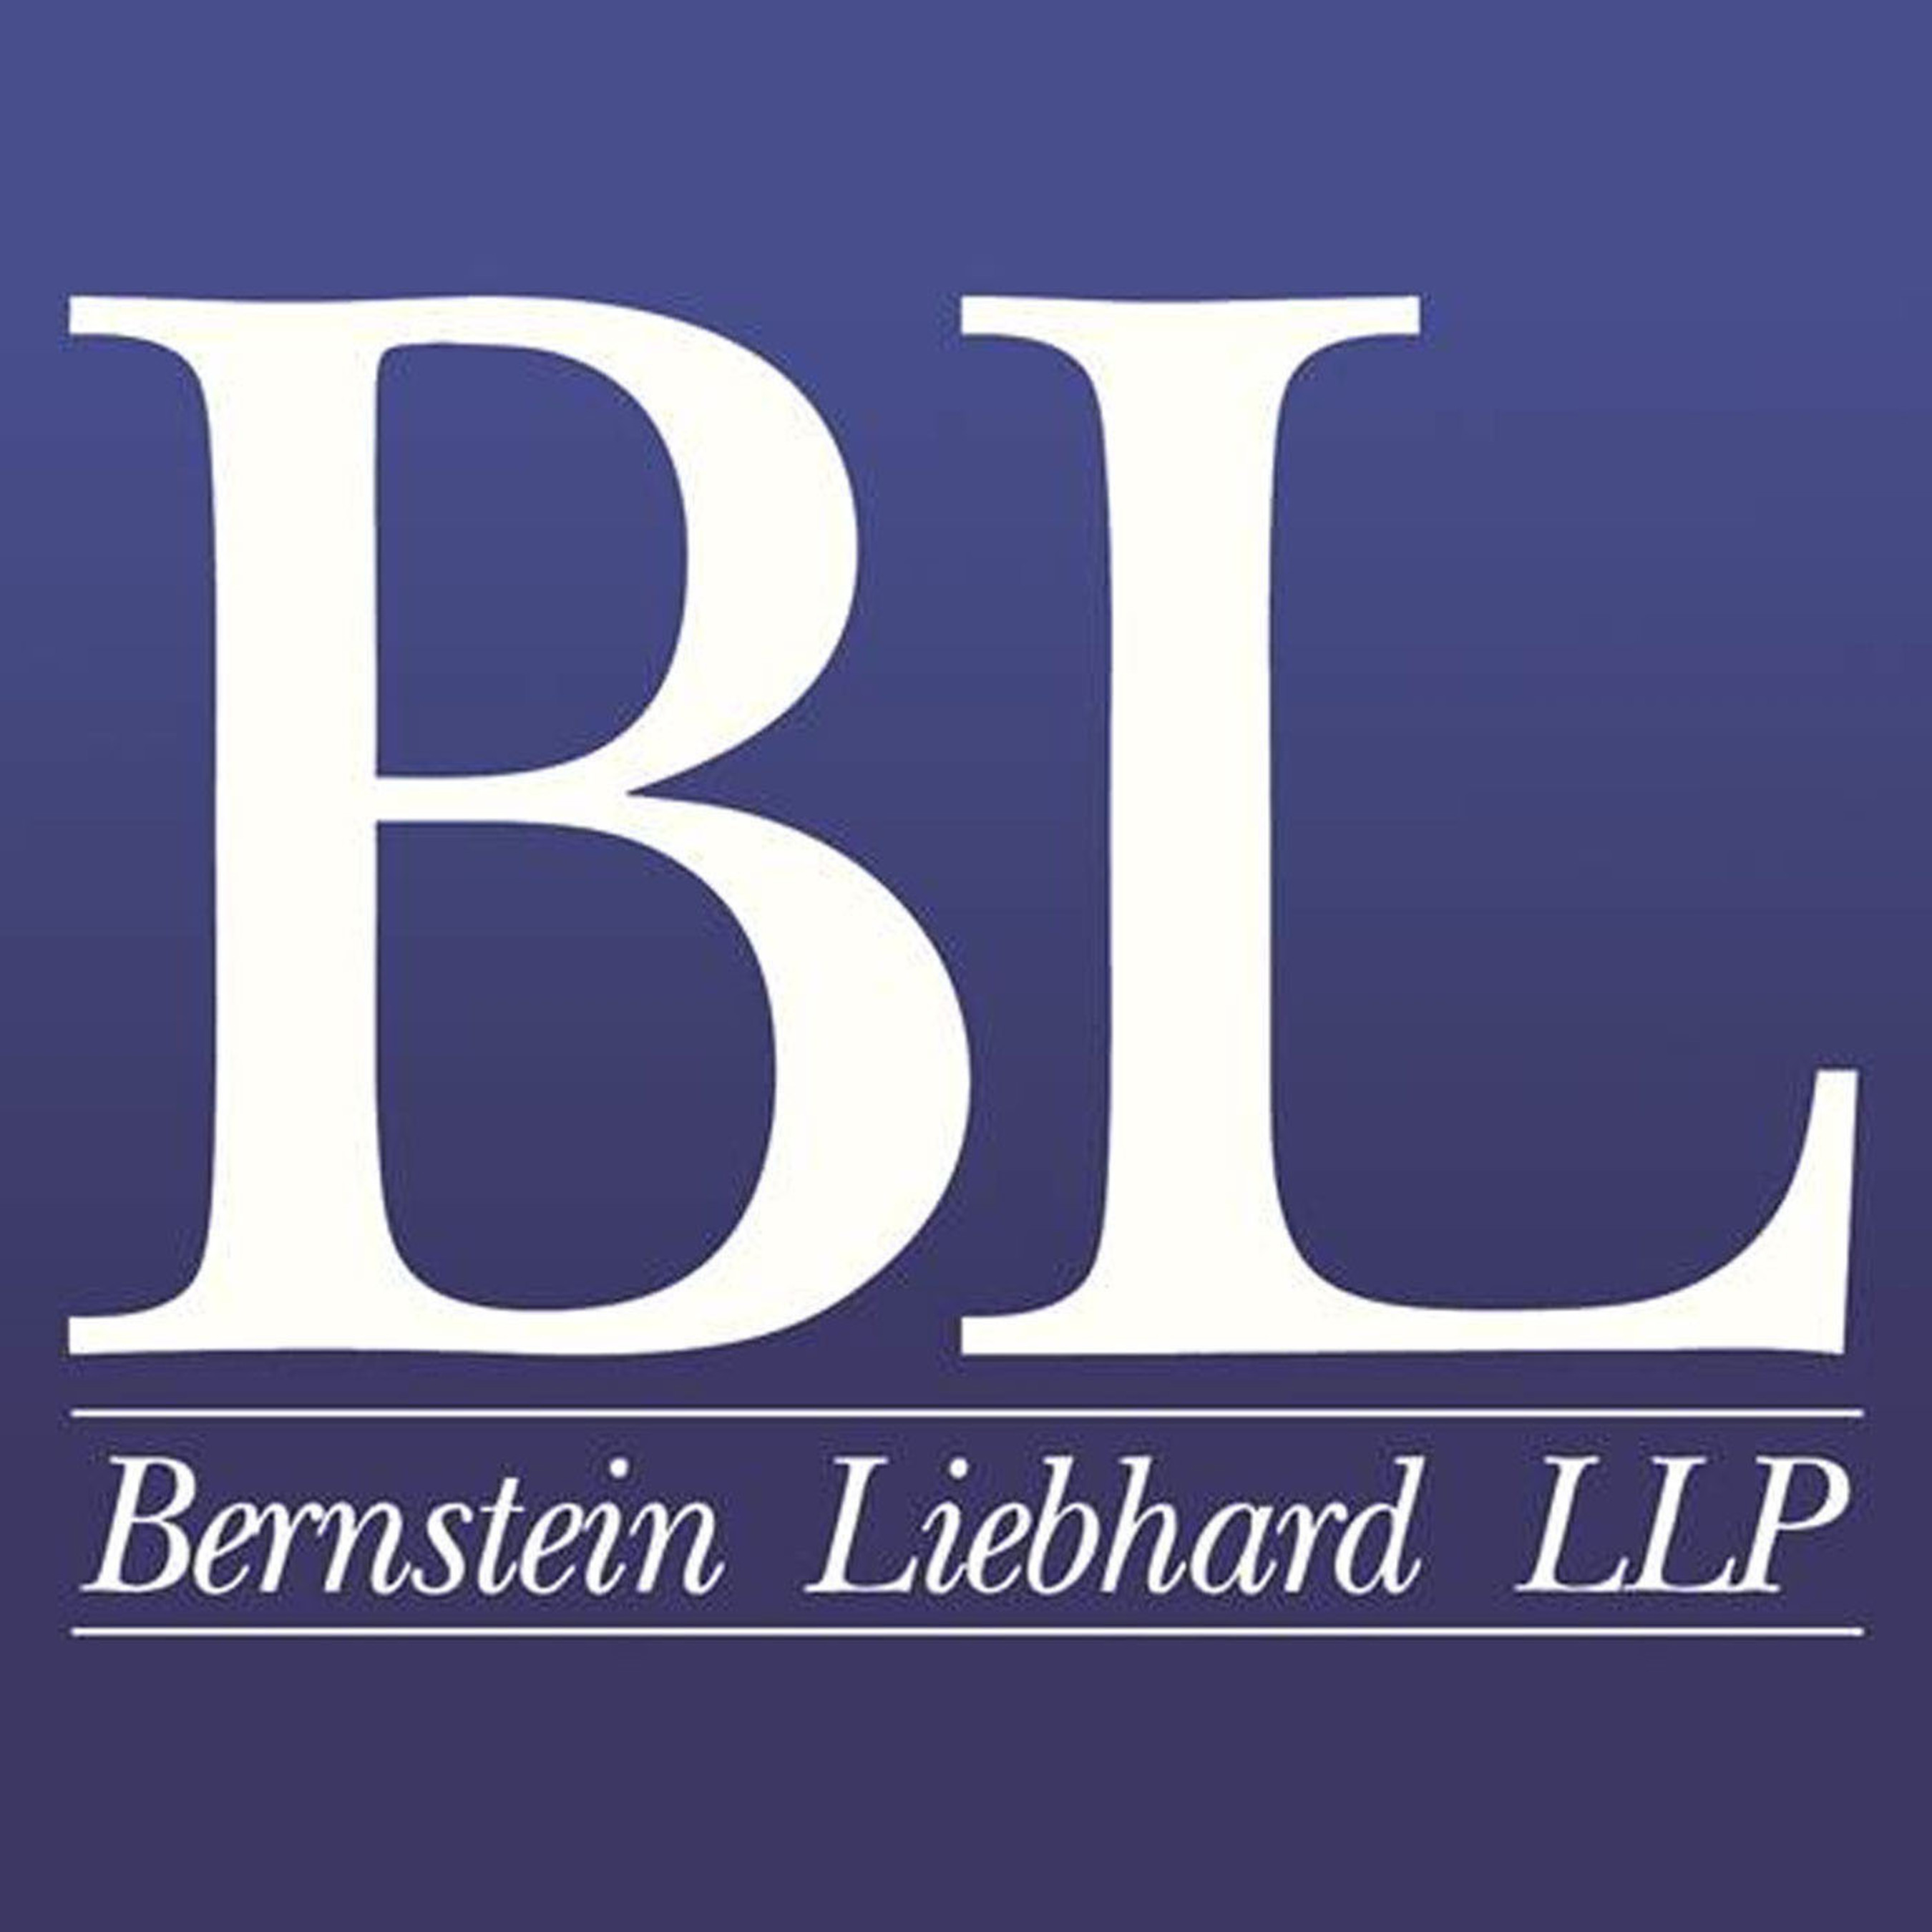 Bernstein Liebhard LLP. (PRNewsFoto/Bernstein Liebhard LLP)